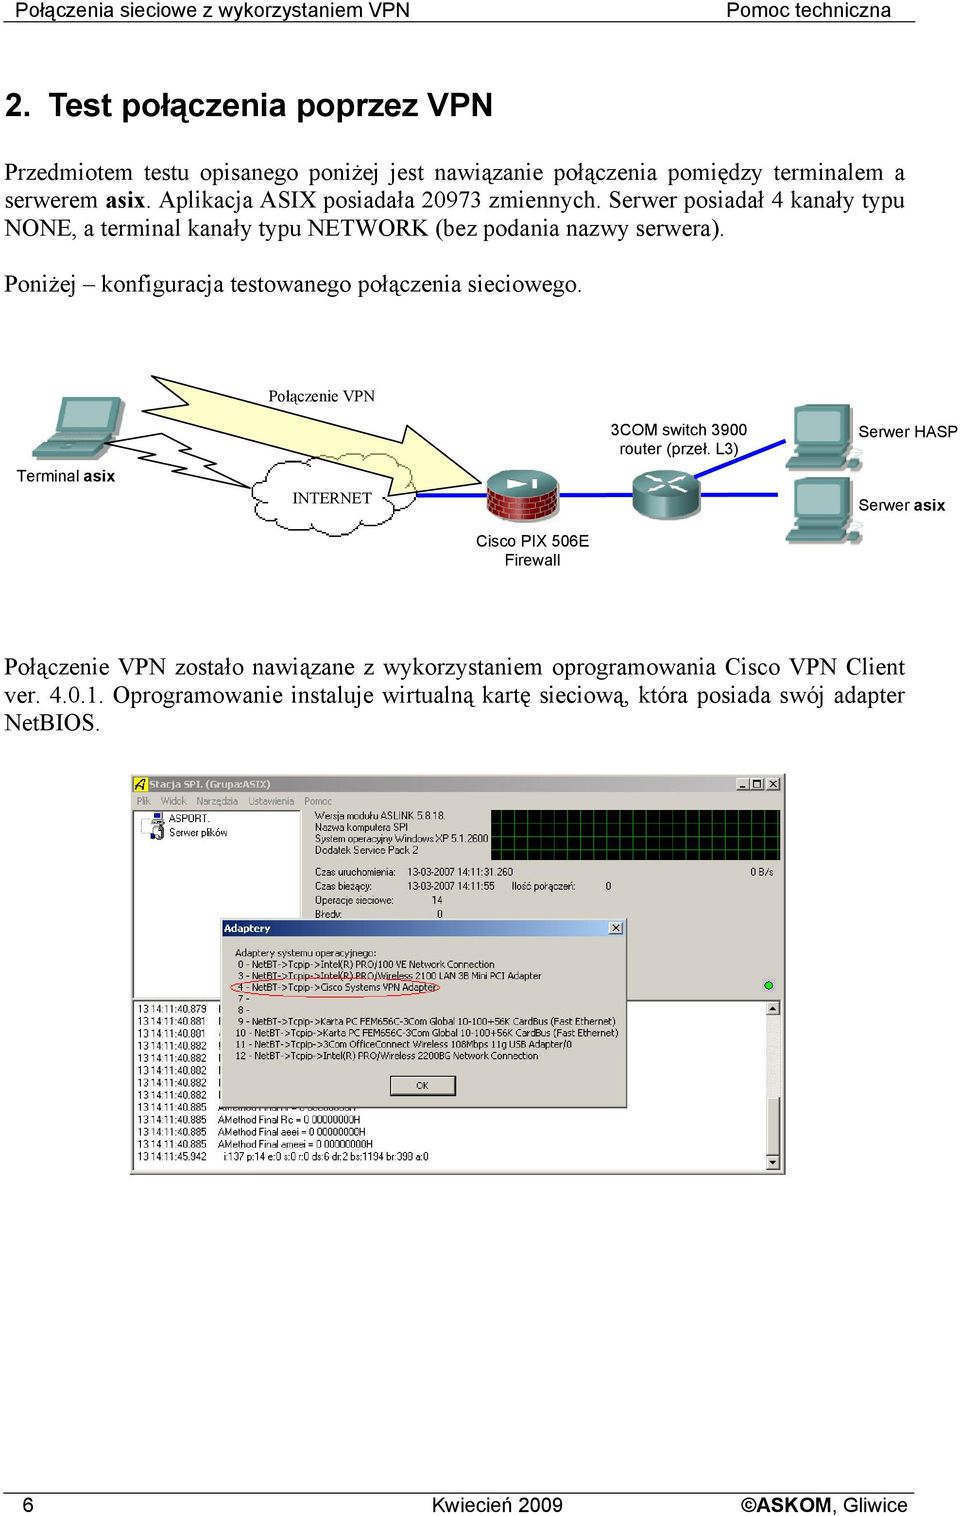 Serwer posiadał 4 kanały typu NONE, a terminal kanały typu NETWORK (bez podania nazwy serwera). Poniżej konfiguracja testowanego połączenia sieciowego.